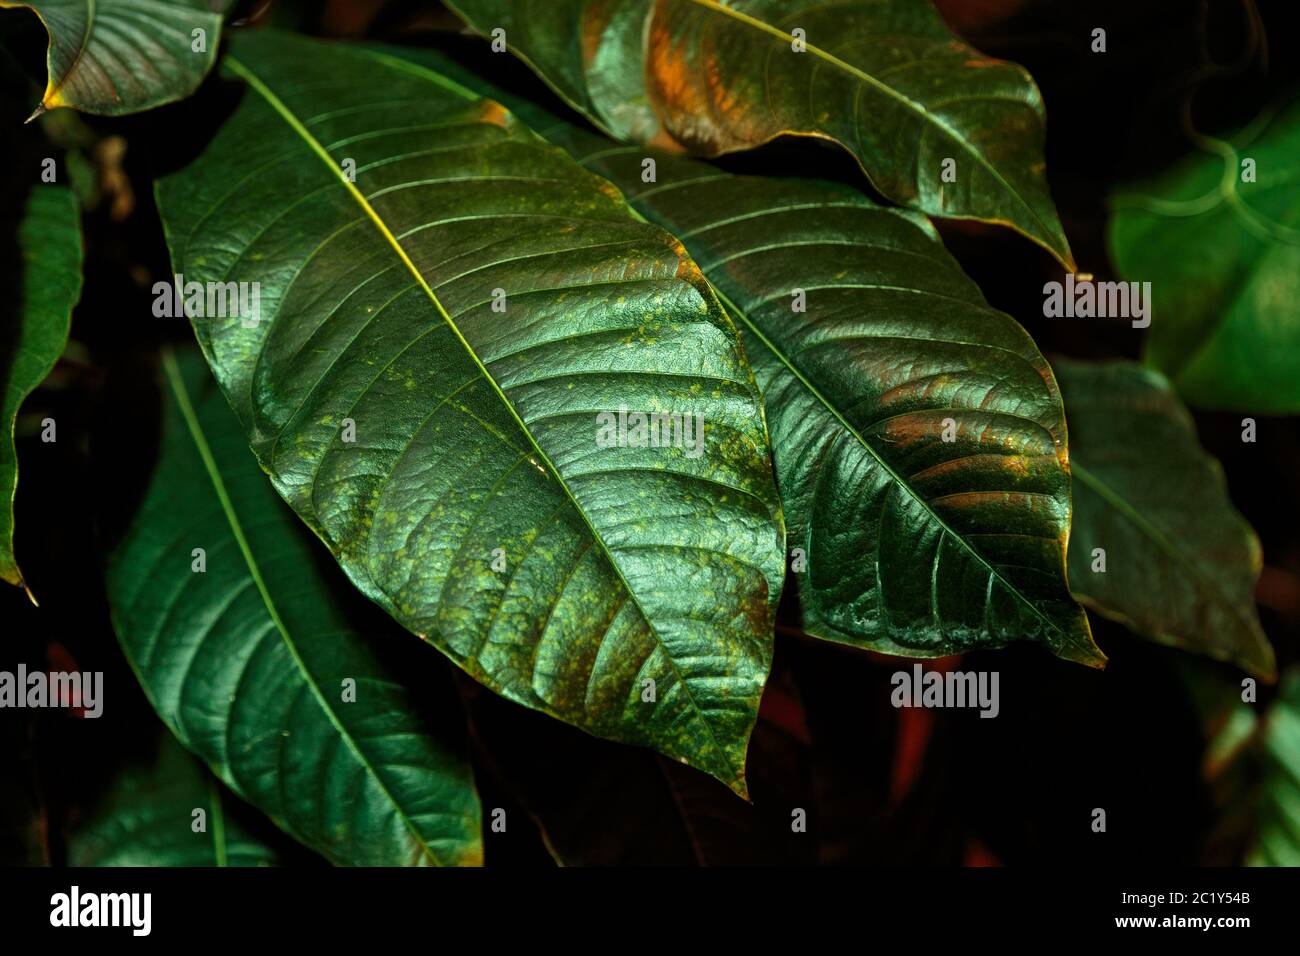 Tropische Palme grüne Blätter, Blumenmuster Hintergrund, echtes Foto. Natürliches Blattmuster. Dunkle Palmenwald Tapete Stockfoto